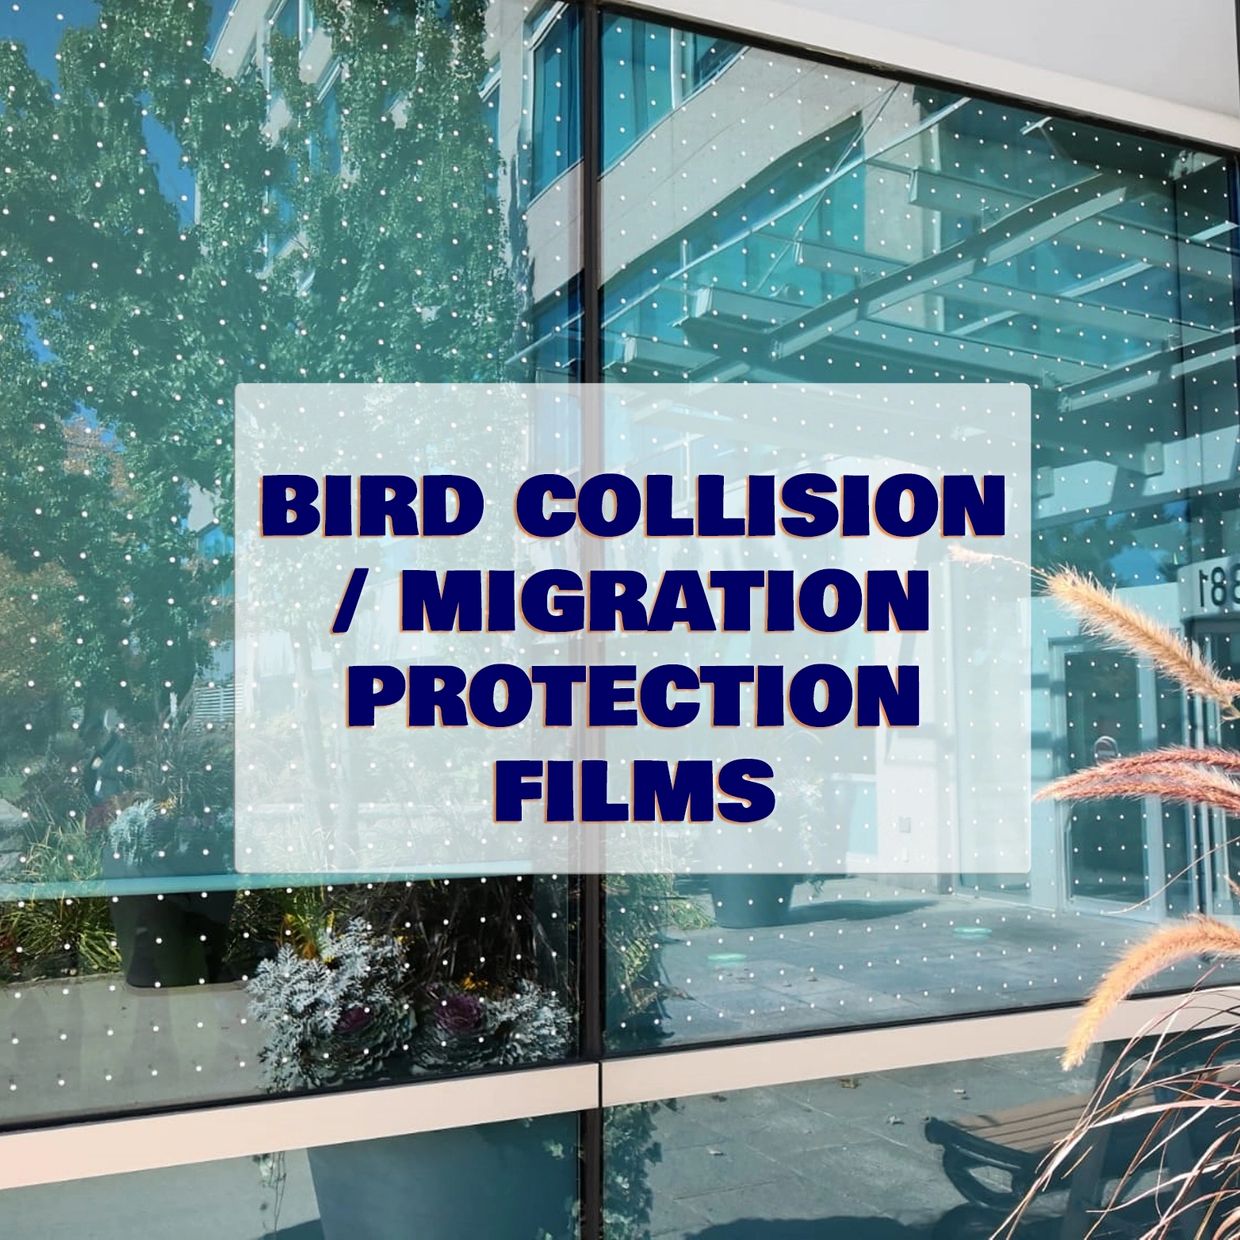 Bird safety film
bird film
window film safety
safety film
window protection
window film migration